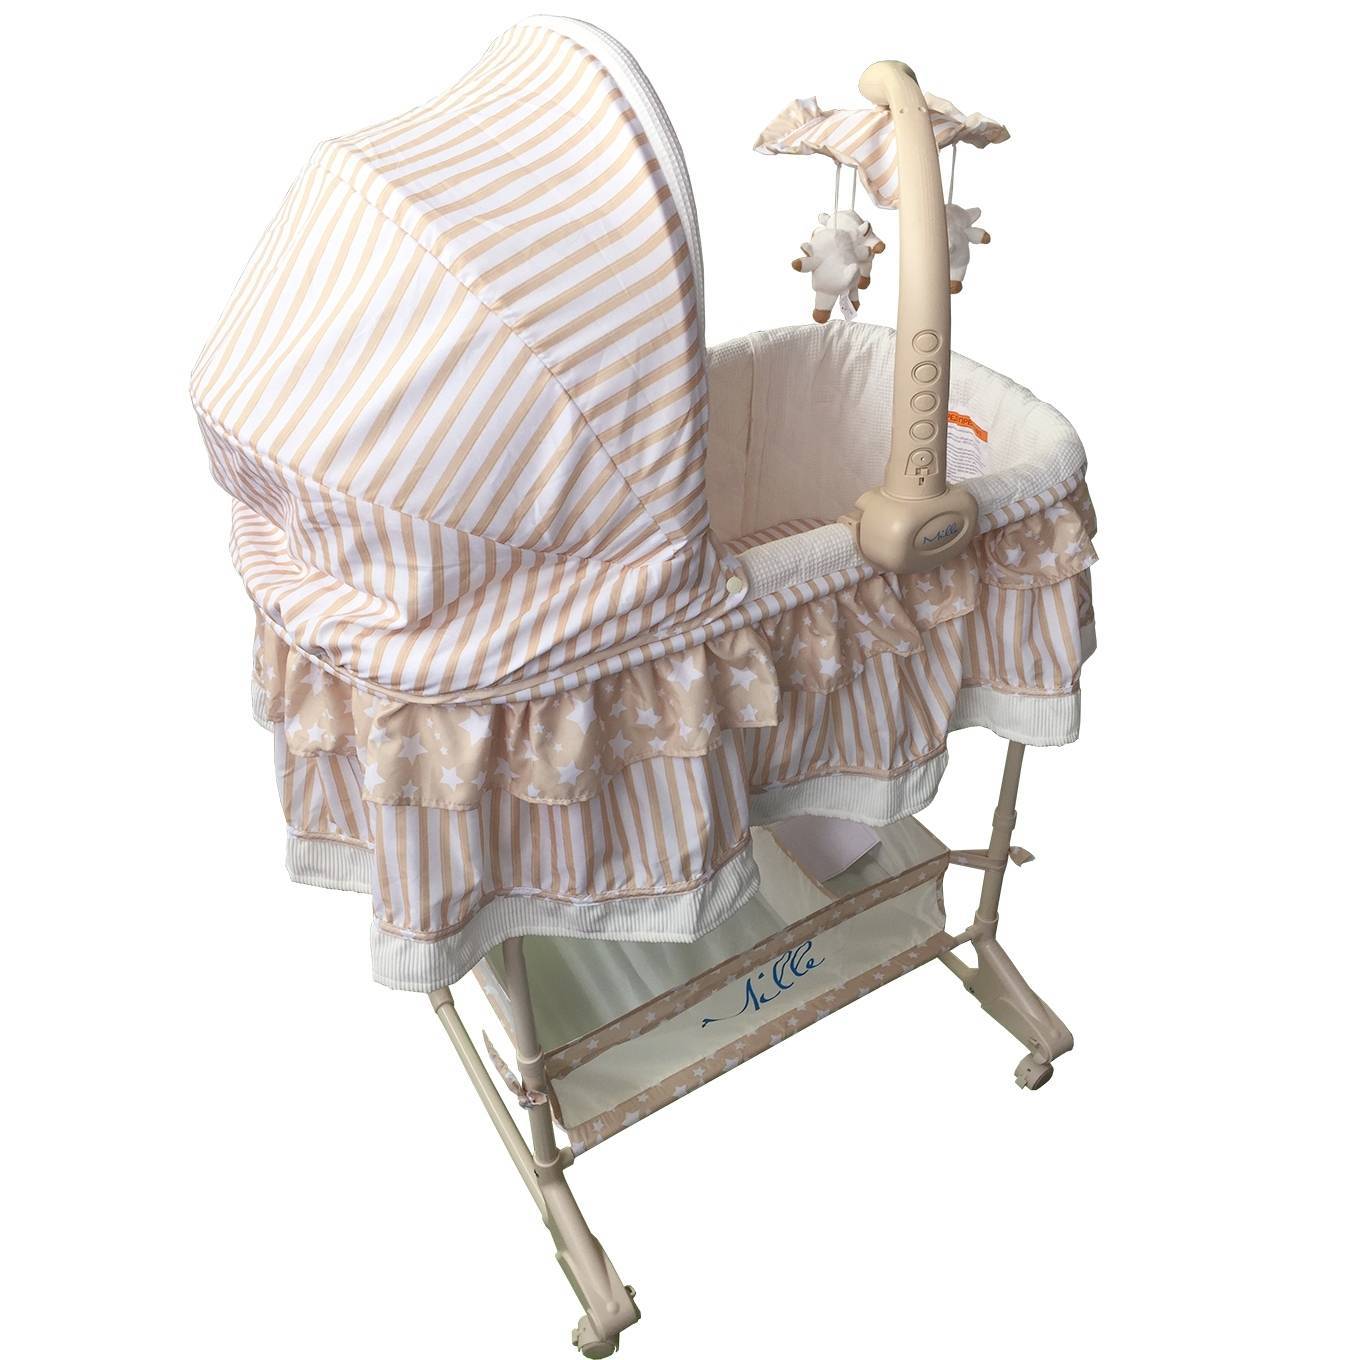 Люлька для новорожденных на колесиках: колыбель передвижная или с маятником, что лучше из них, а также описание и фото 10 моделей кроваток от разных производителей